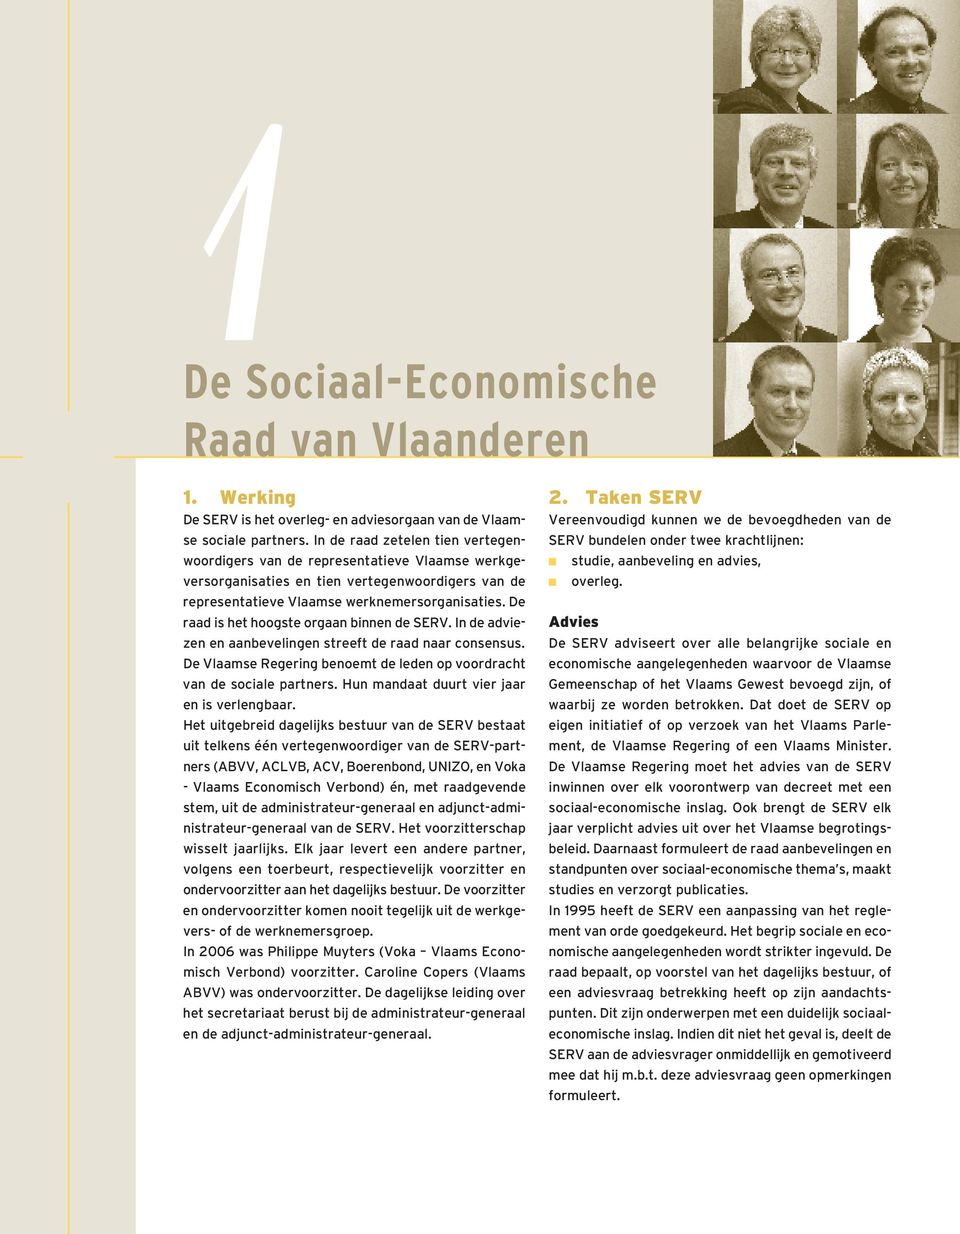 De raad is het hoogste orgaan binnen de SERV. In de adviezen en aanbevelingen streeft de raad naar consensus. De Vlaamse Regering benoemt de leden op voordracht van de sociale partners.